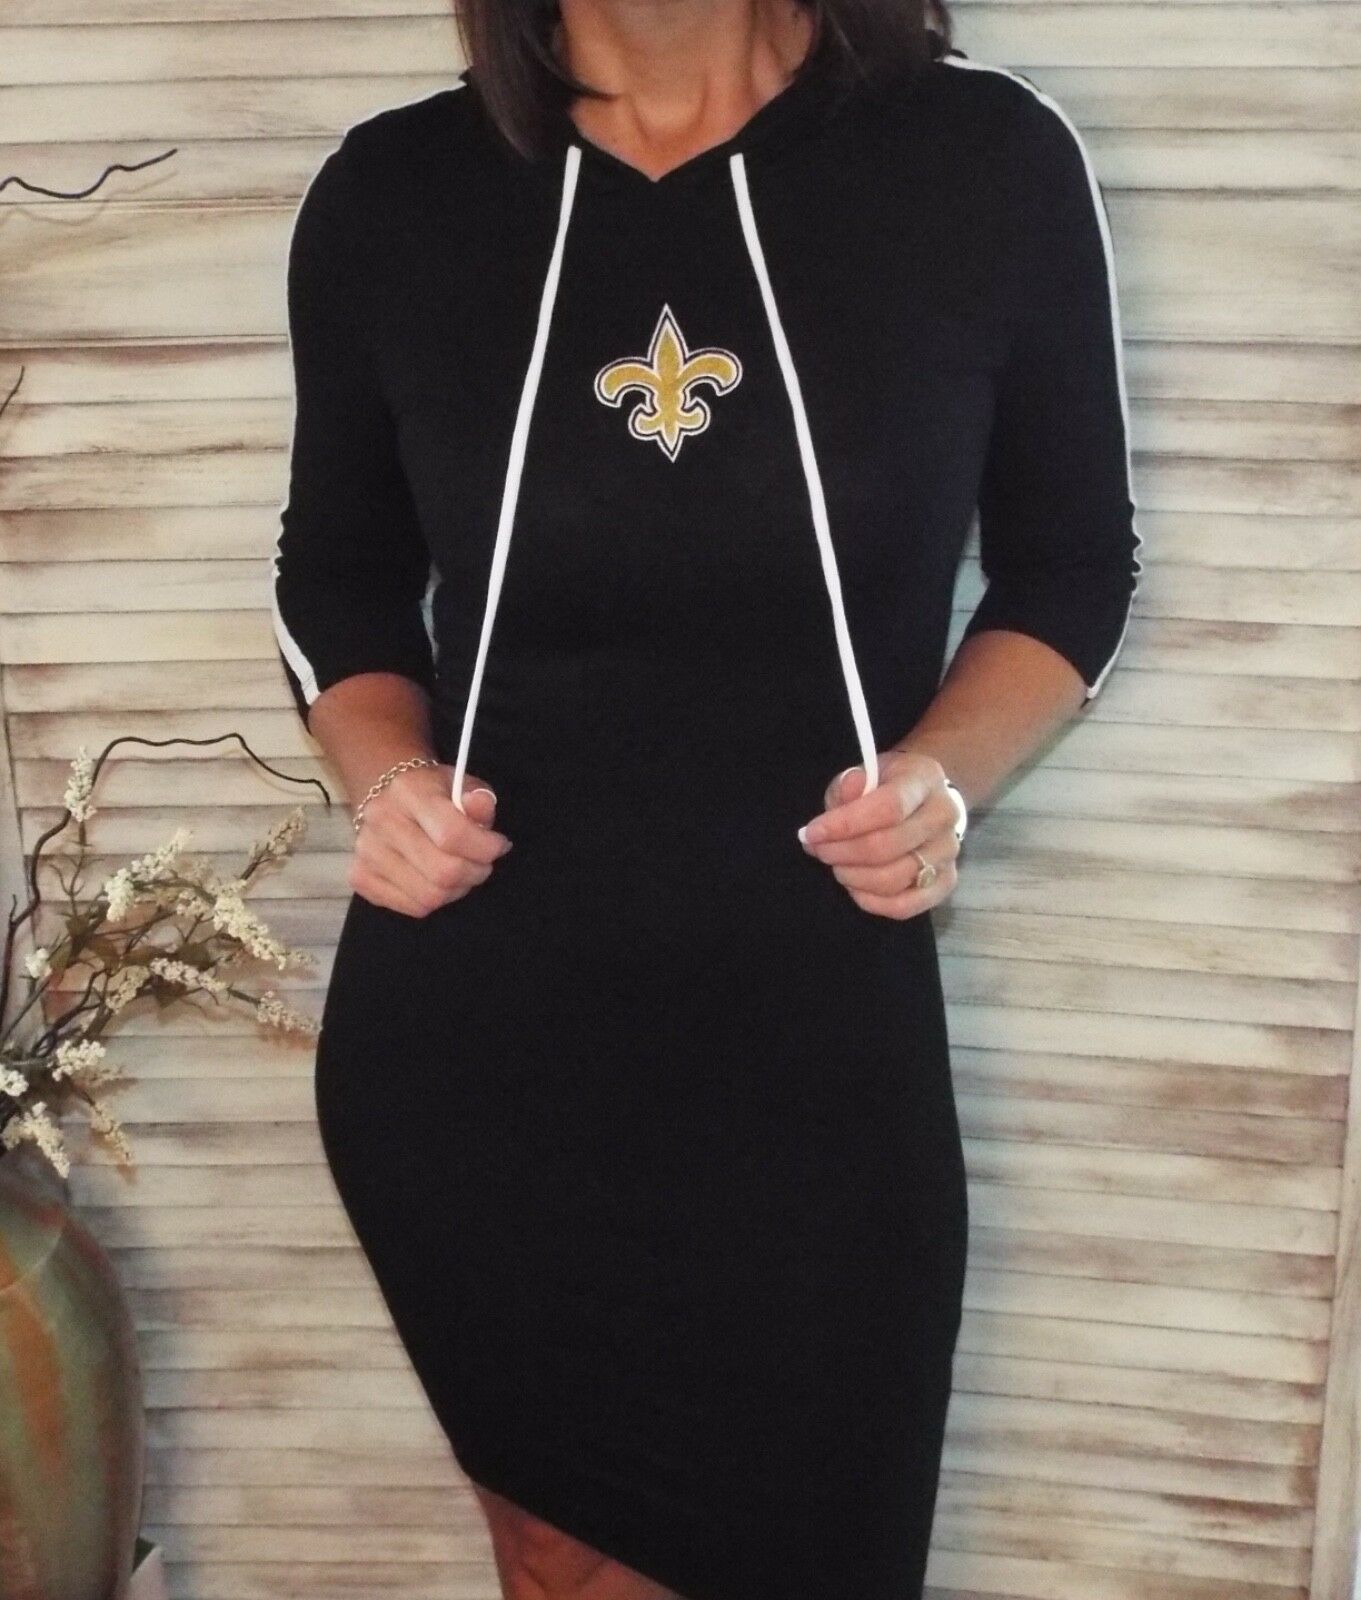 New Orleans Saints Fleur de Lis Hoodie Bodycon Stretch 3/4 Dress Black S/M/L